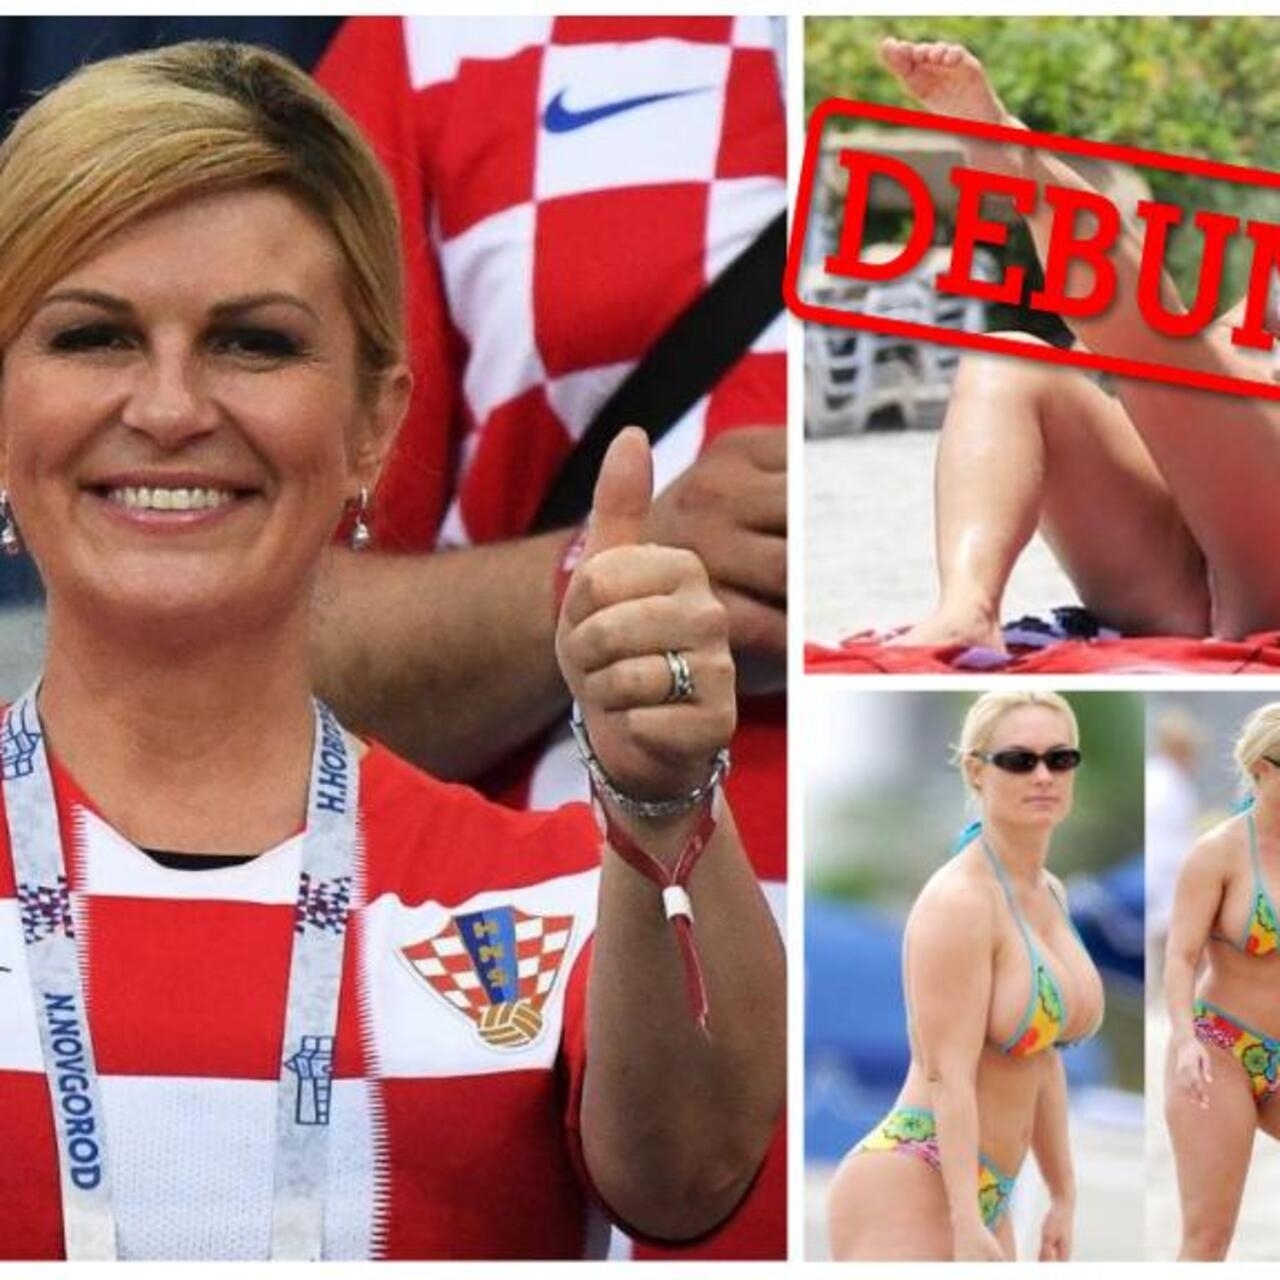 bat cave reccomend croatian president in a bikini pic